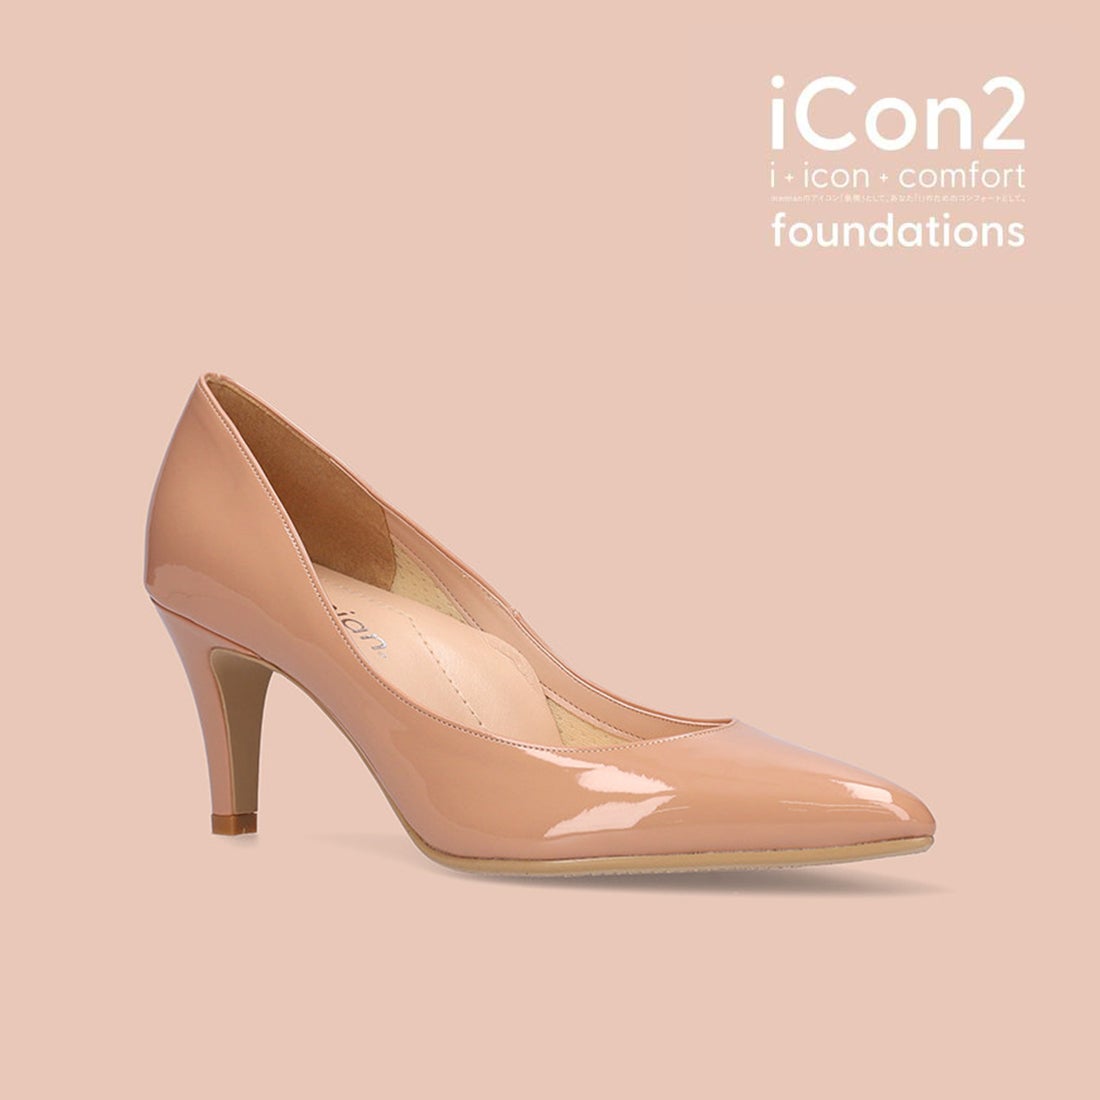 マミアン Mamian 7 0cm 自分史上 最高美脚 ポインテッドトゥヌードベージュパンプス Icon2 Foundations 全9色 F73 ジェリーシェル ファッション通販 Fashion Walker In Locondo